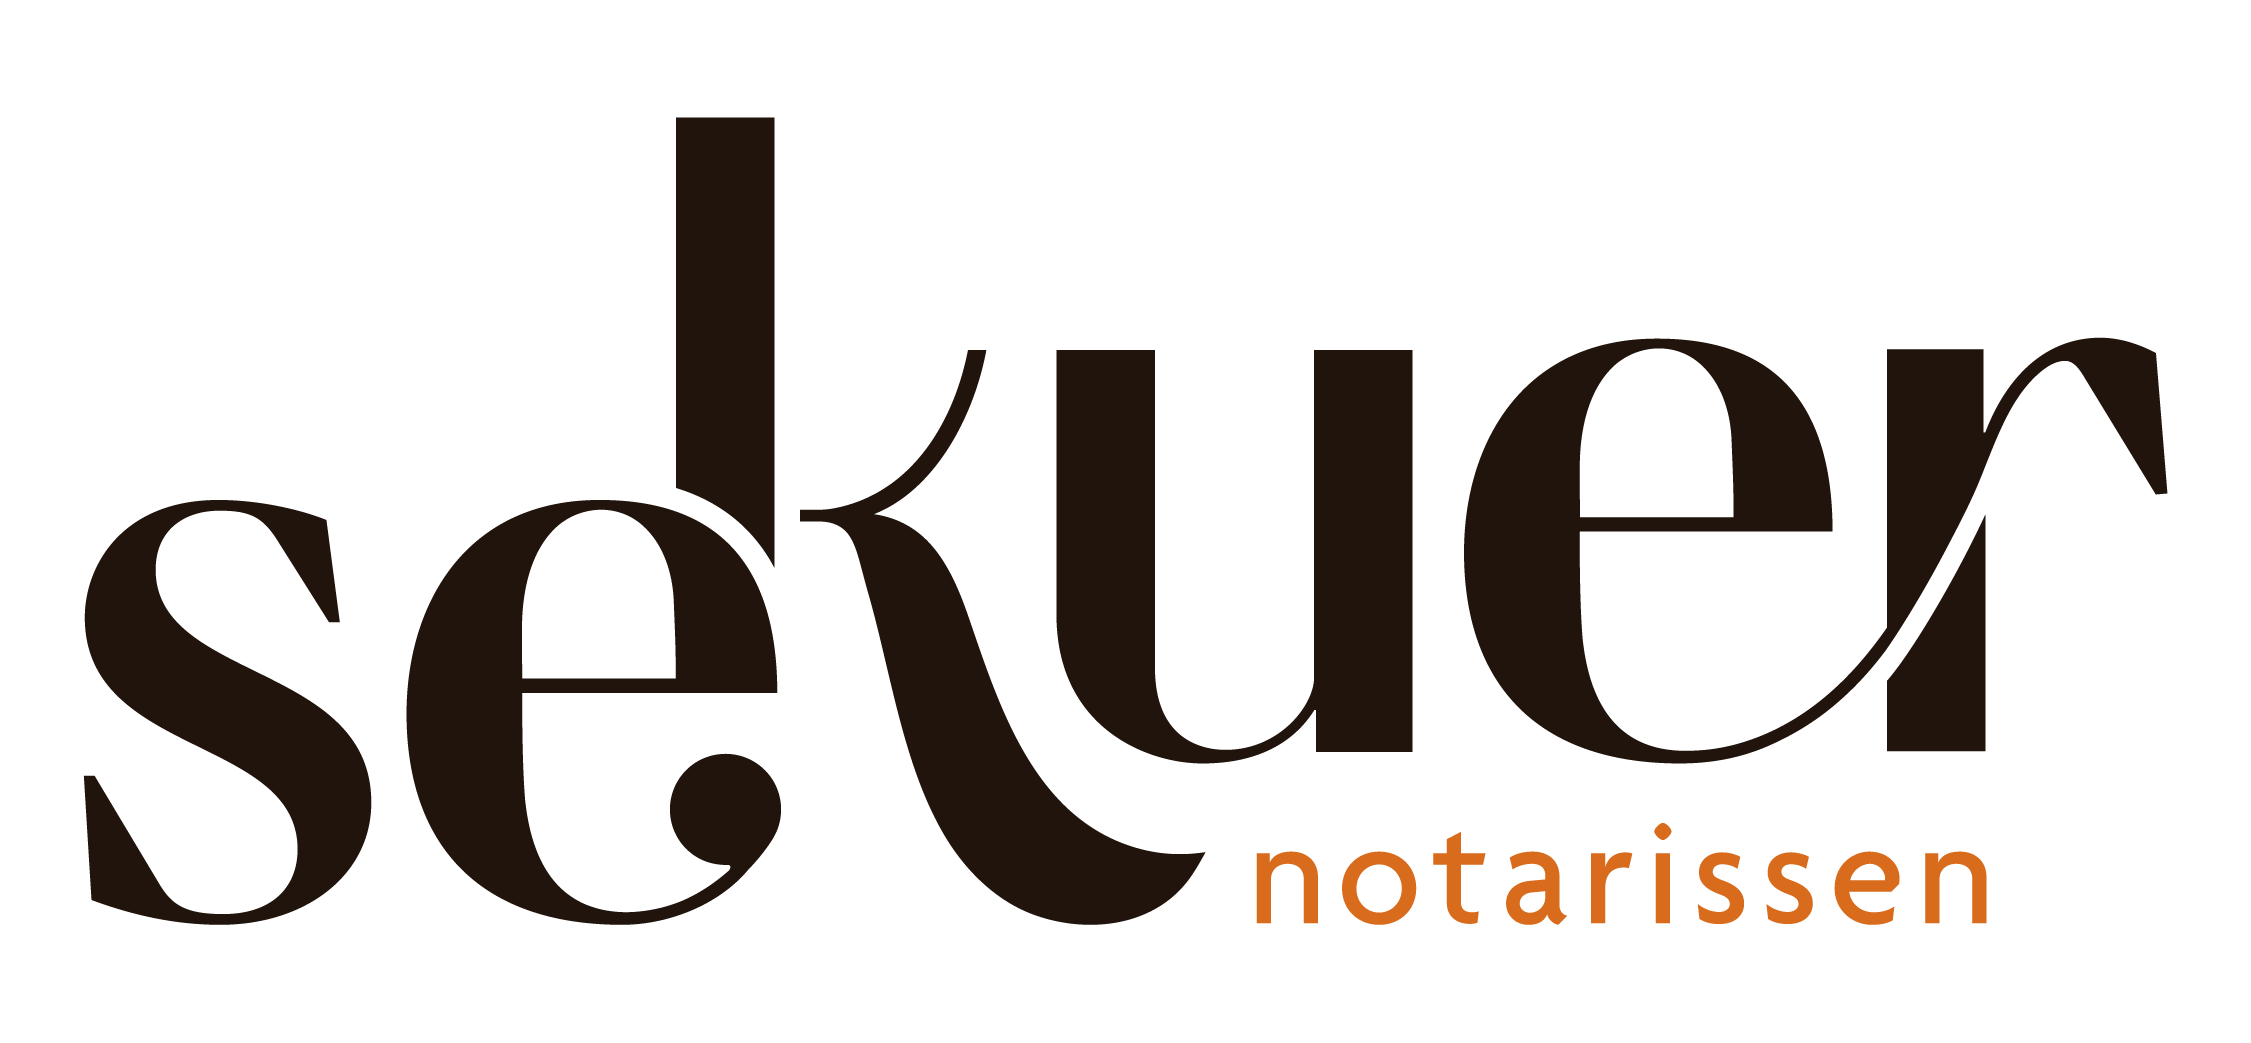 Het nieuwe logo van Sekuer Notarissen (voorheen Sekuer de Notaris)